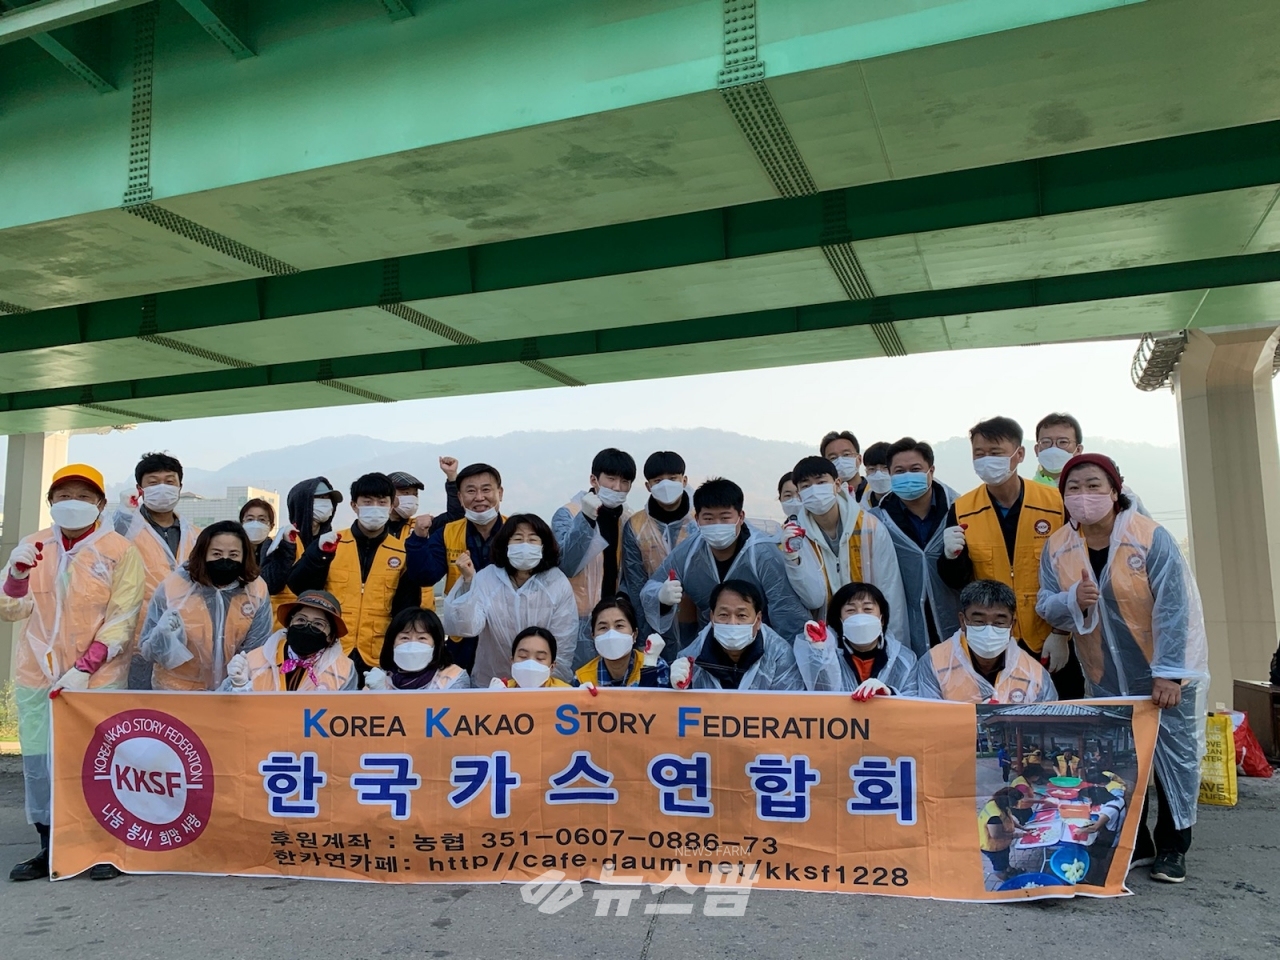 @광명시 소하1동 행정복지센터는 11월 14일 한국카스연합회 주관으로 주거취약계층 밀집거주지역 주민을 위해 연탄 600장 전달식을 가졌다.